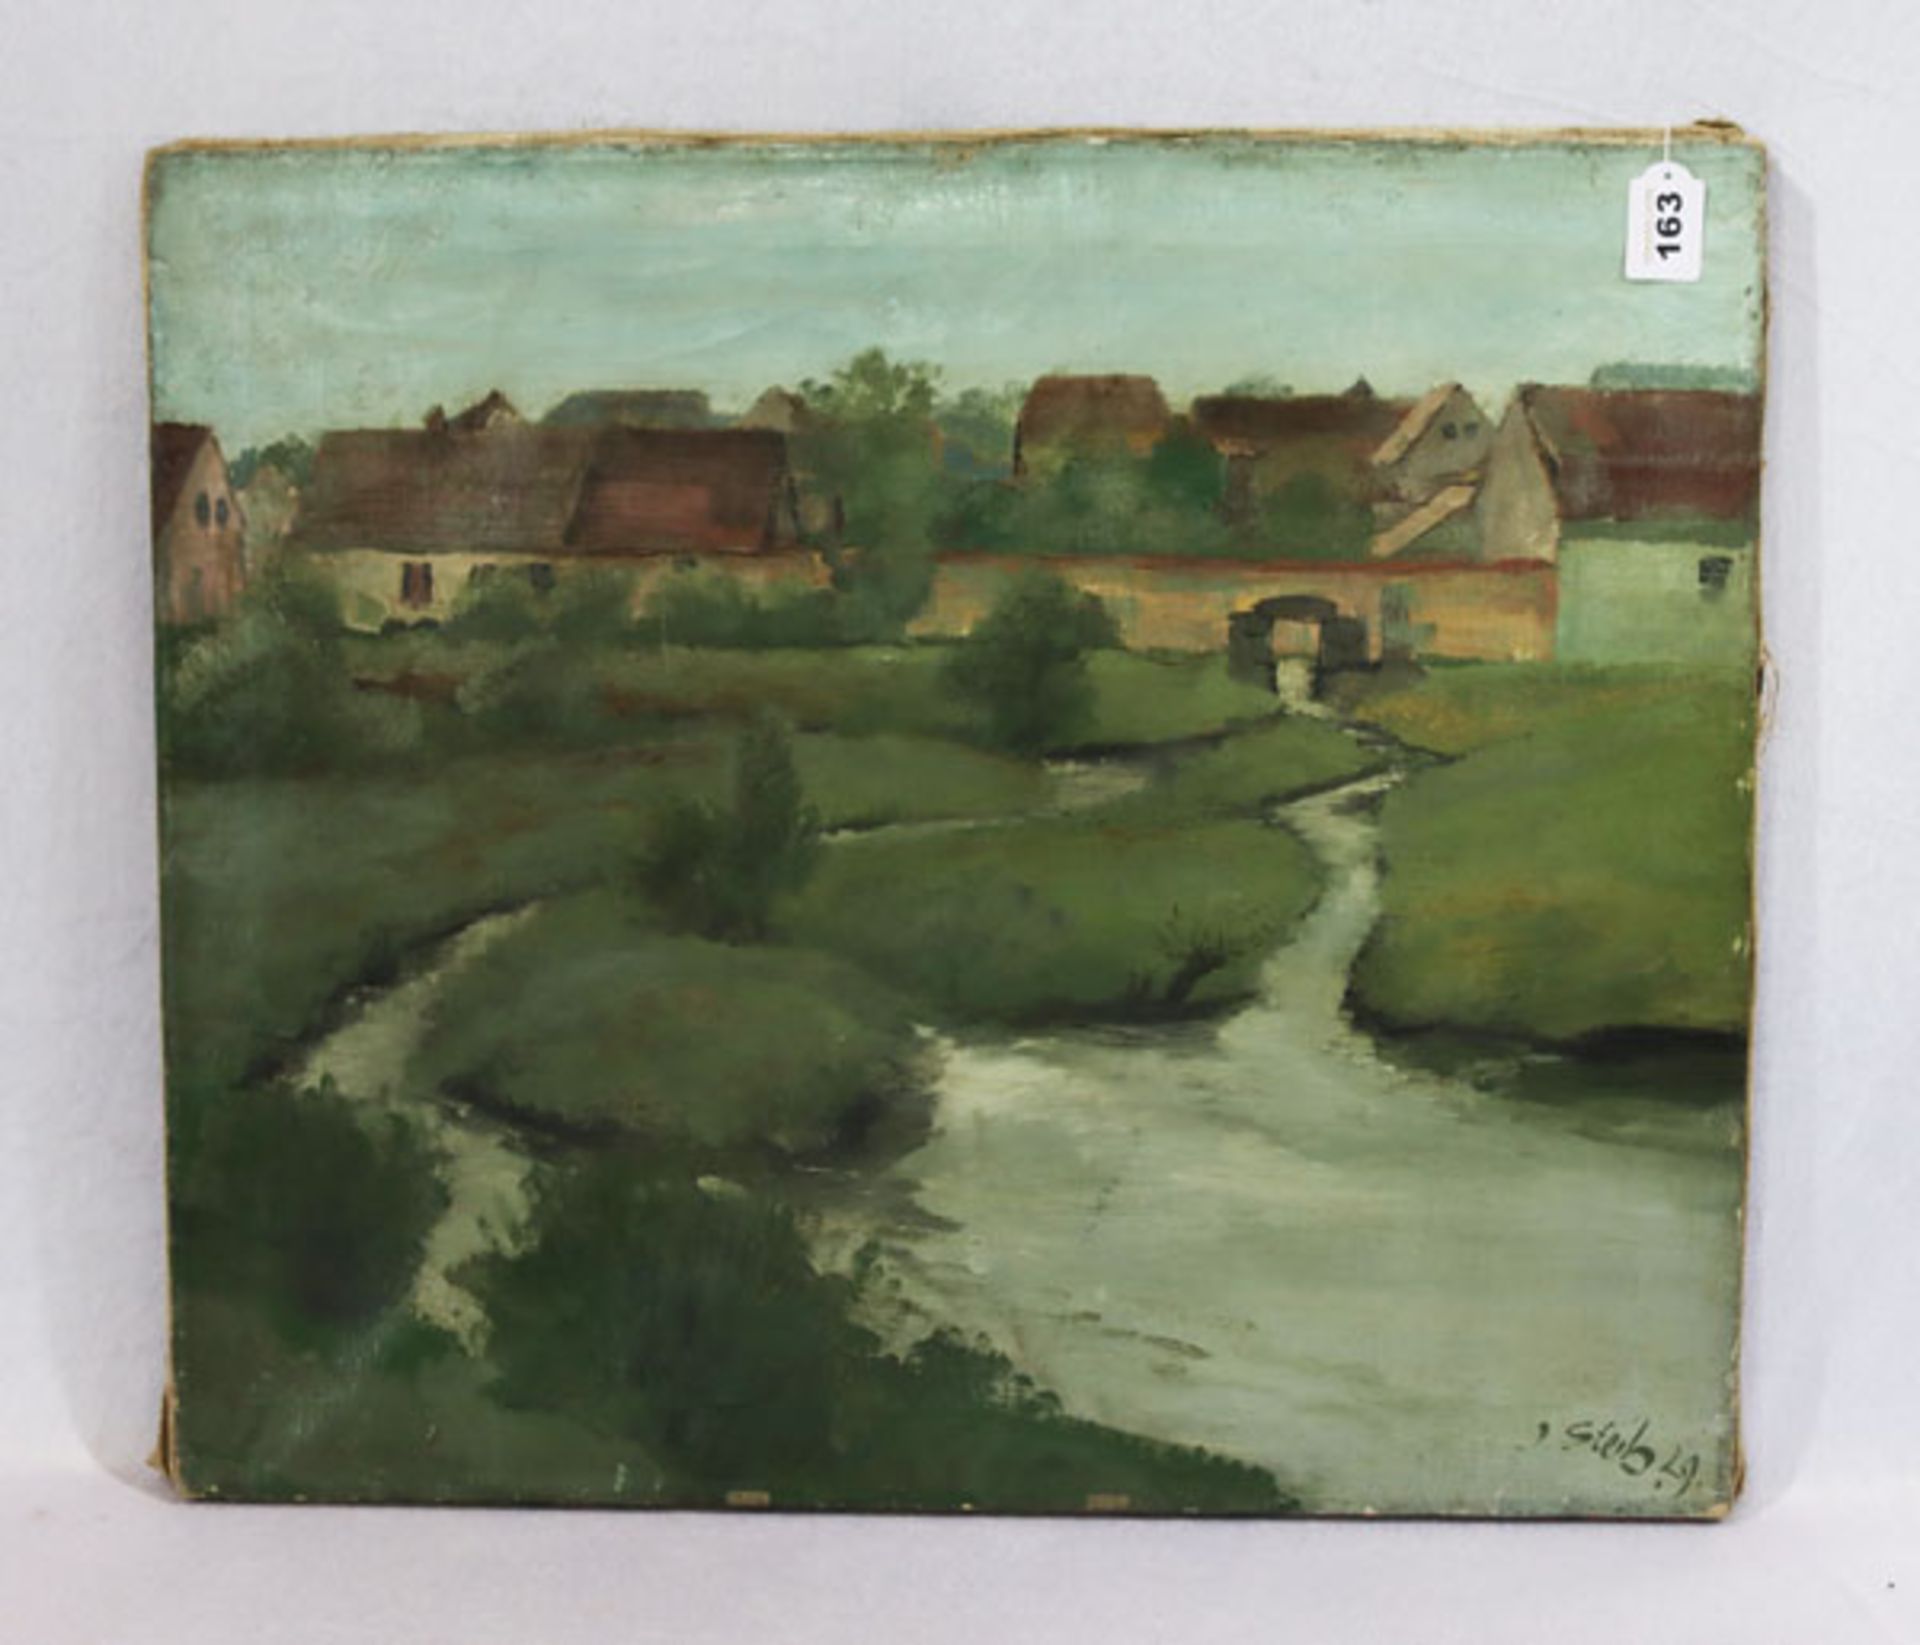 Gemälde ÖL/LW 'Dorfansicht mit Bachlauf', signiert J. Steib, 29 ?, Bildoberfläche und Gemälde